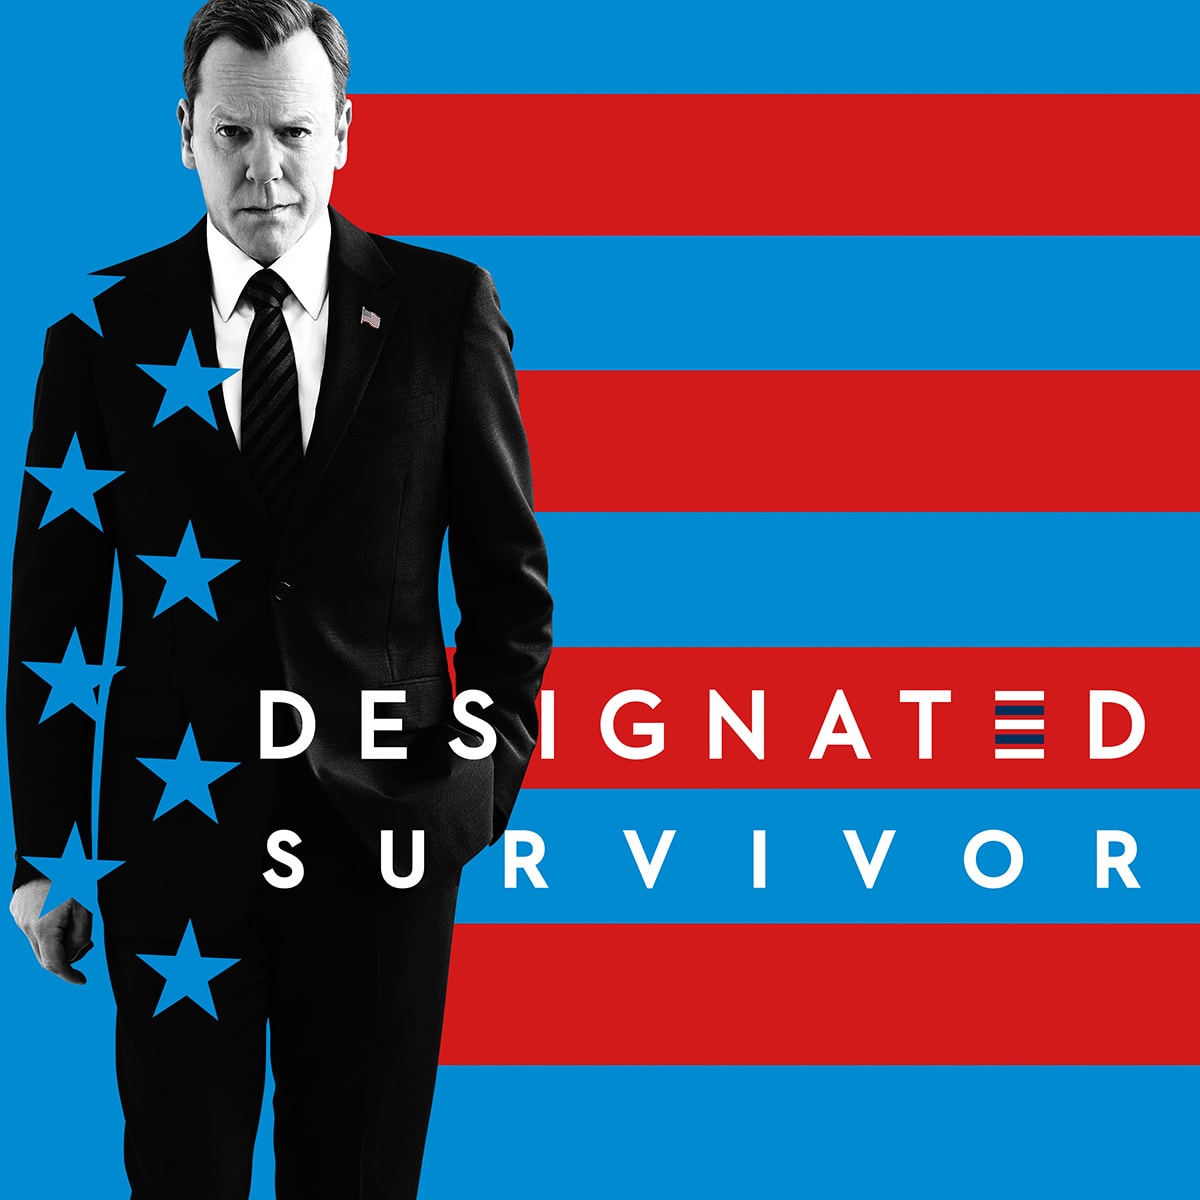 Designated-Survivor-Season-2-artwork-ABC-TV-series-Kiefer-Sutherland.jpg